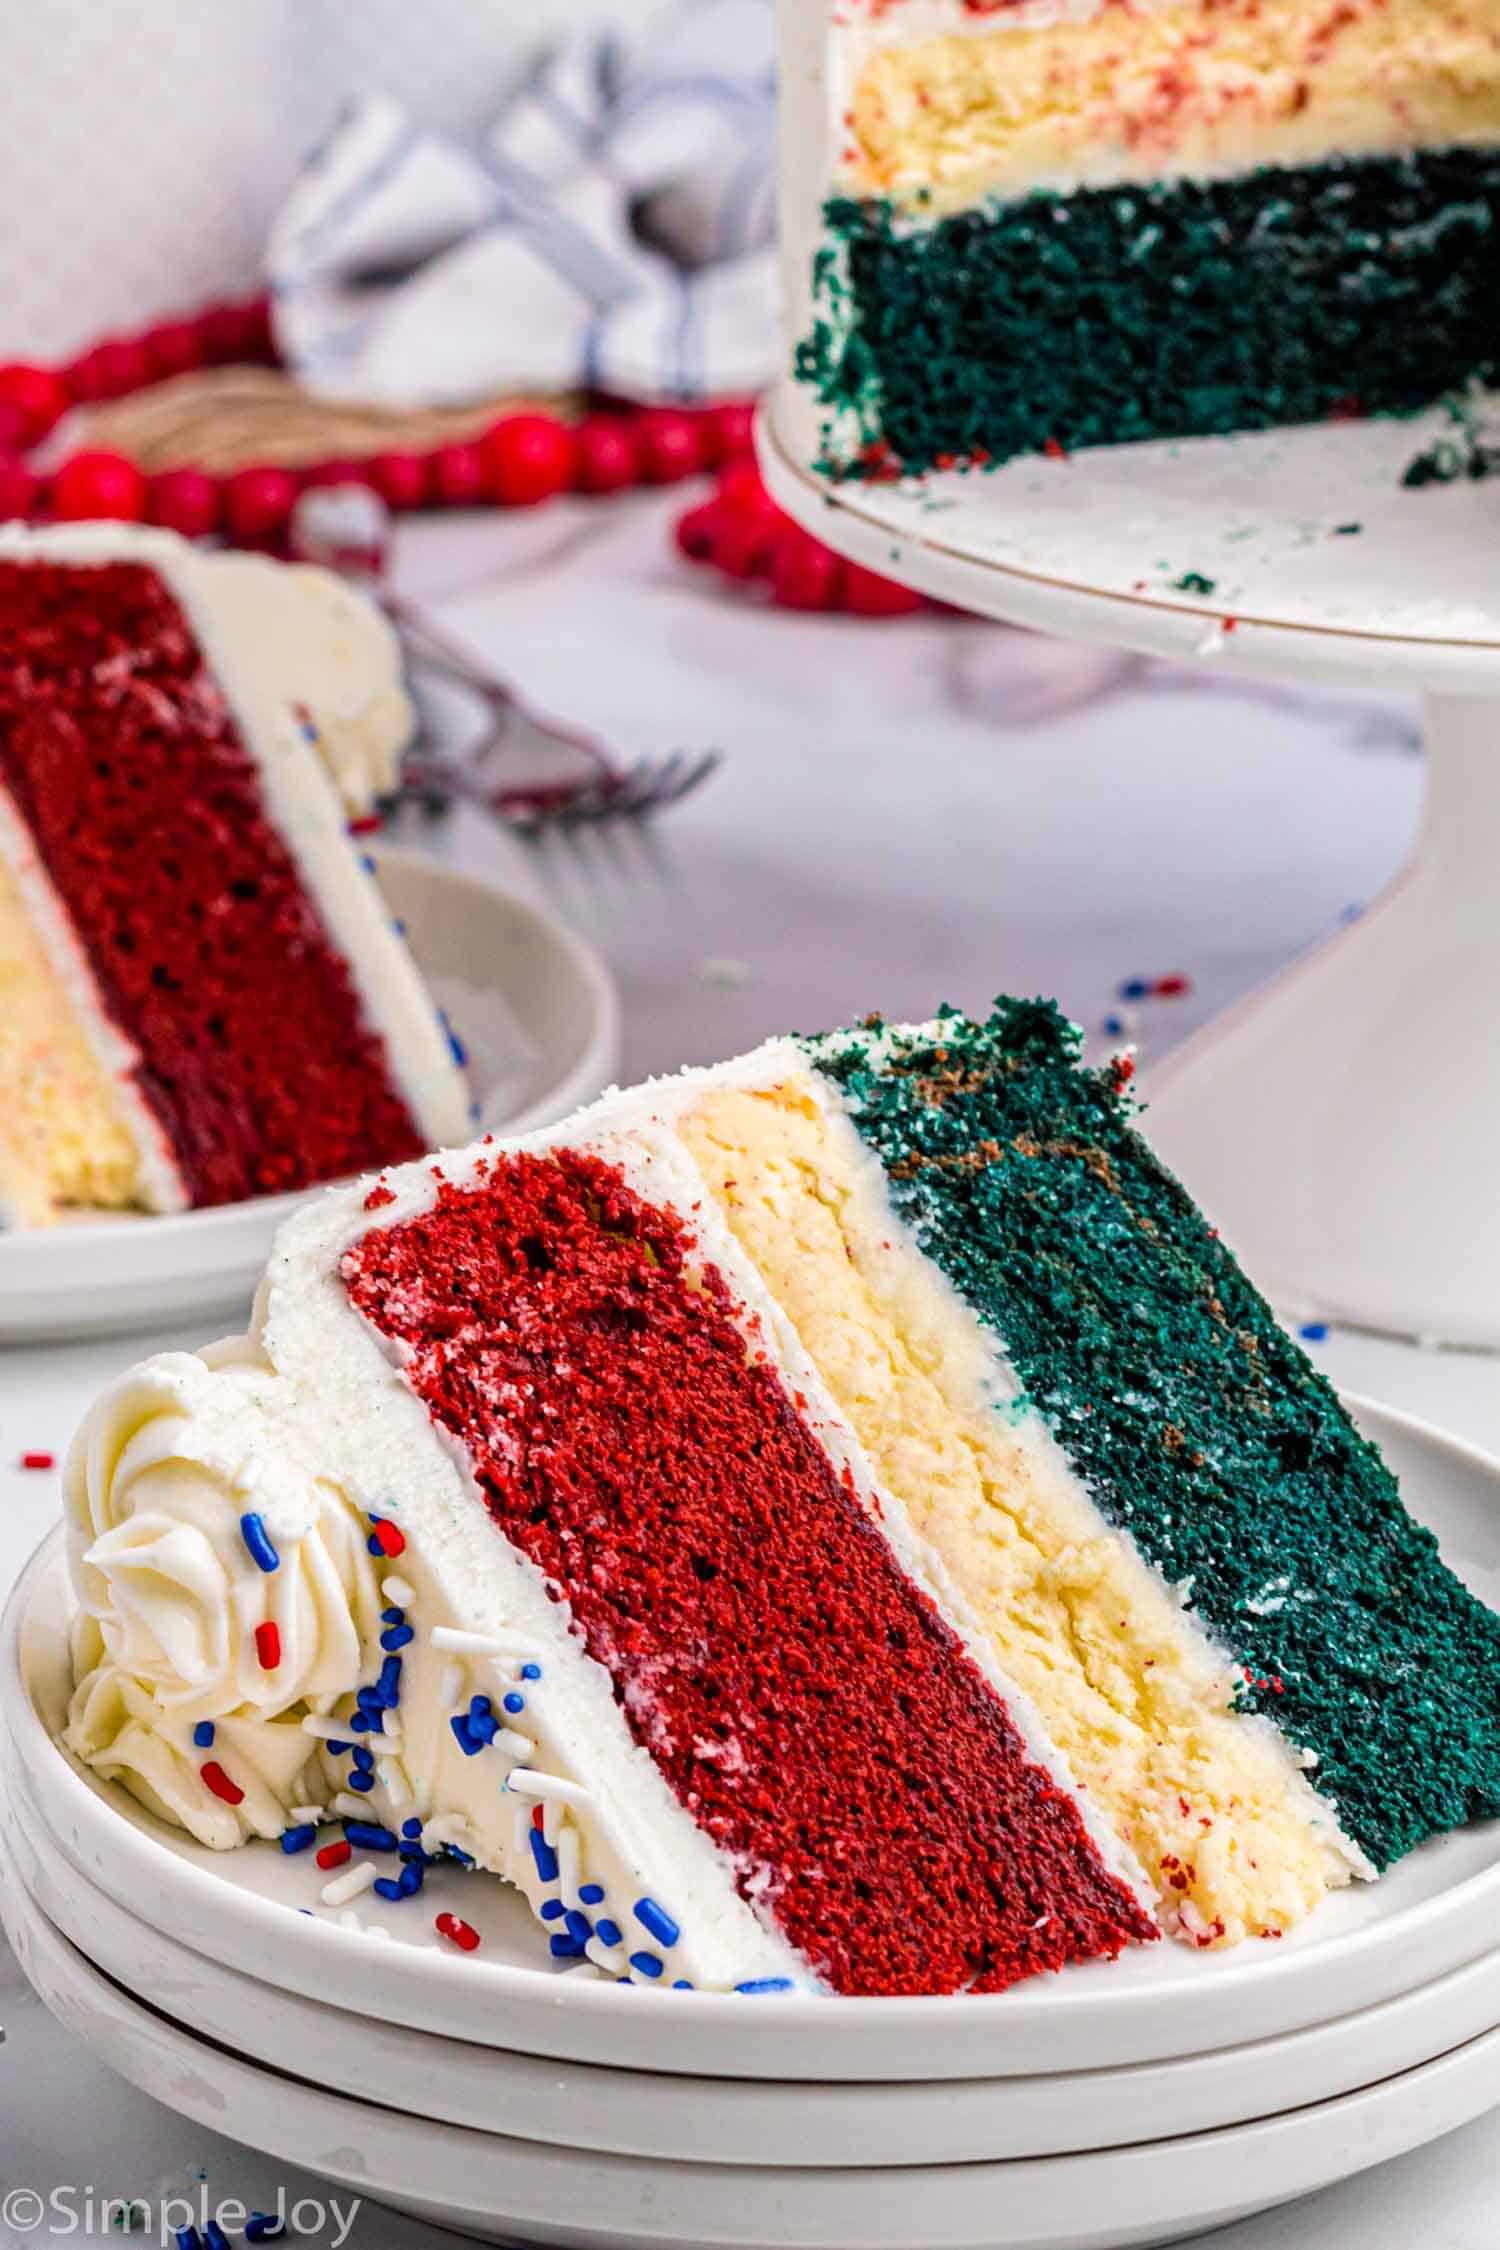 Red & White Wedding Cake Idea - How To by CakesStepbyStep - YouTube